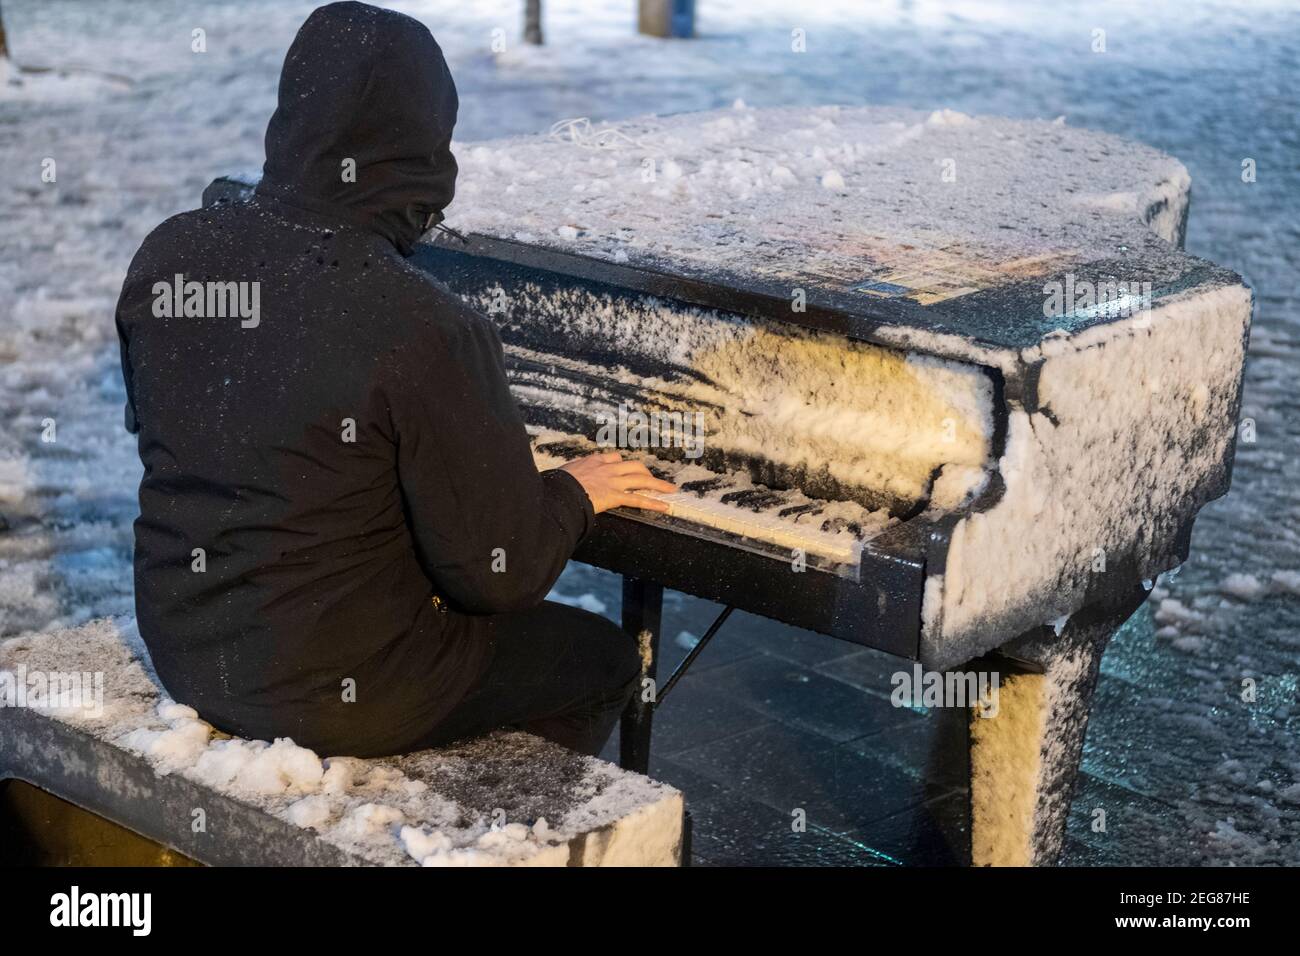 JERUSALEM, ISRAEL - 17. FEBRUAR: Ein Israeli spielt am Zion-Platz Klavier, während Schneefall am 17. Februar 2020 in Jerusalem, Israel. Jerusalem bedeckt durch ersten Schnee in sechs Jahren erreicht sieben bis 10 Zentimeter (drei bis vier Zoll) über Nacht. Stockfoto